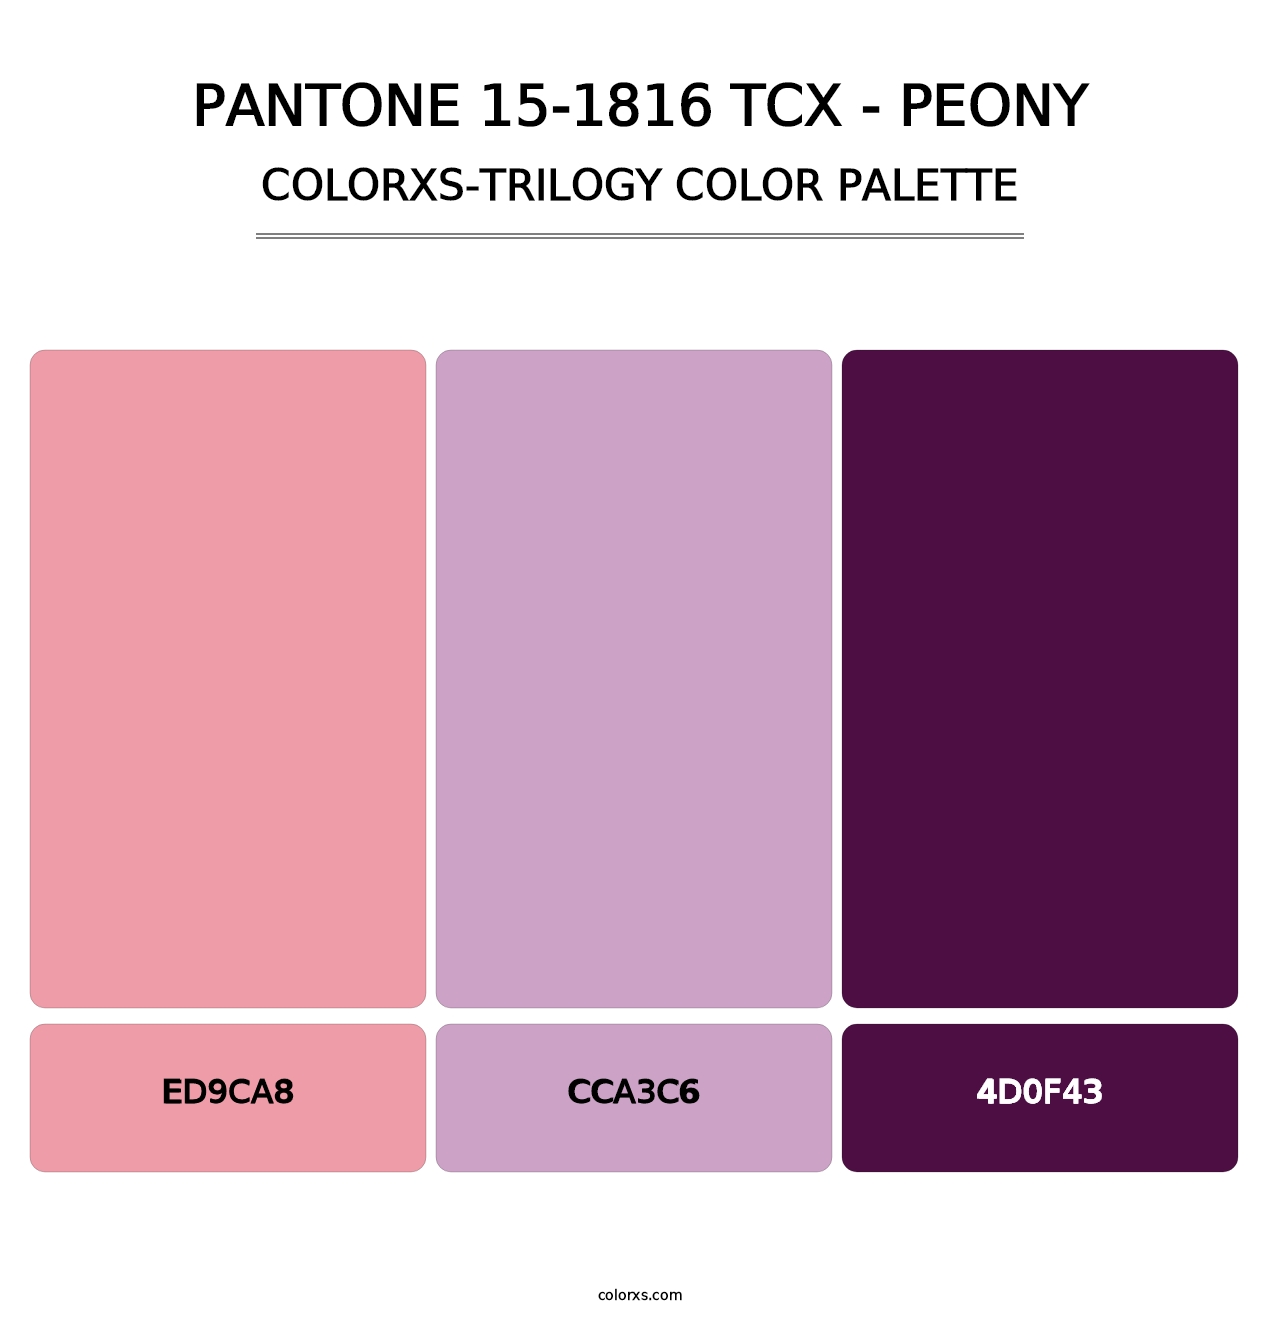 PANTONE 15-1816 TCX - Peony - Colorxs Trilogy Palette